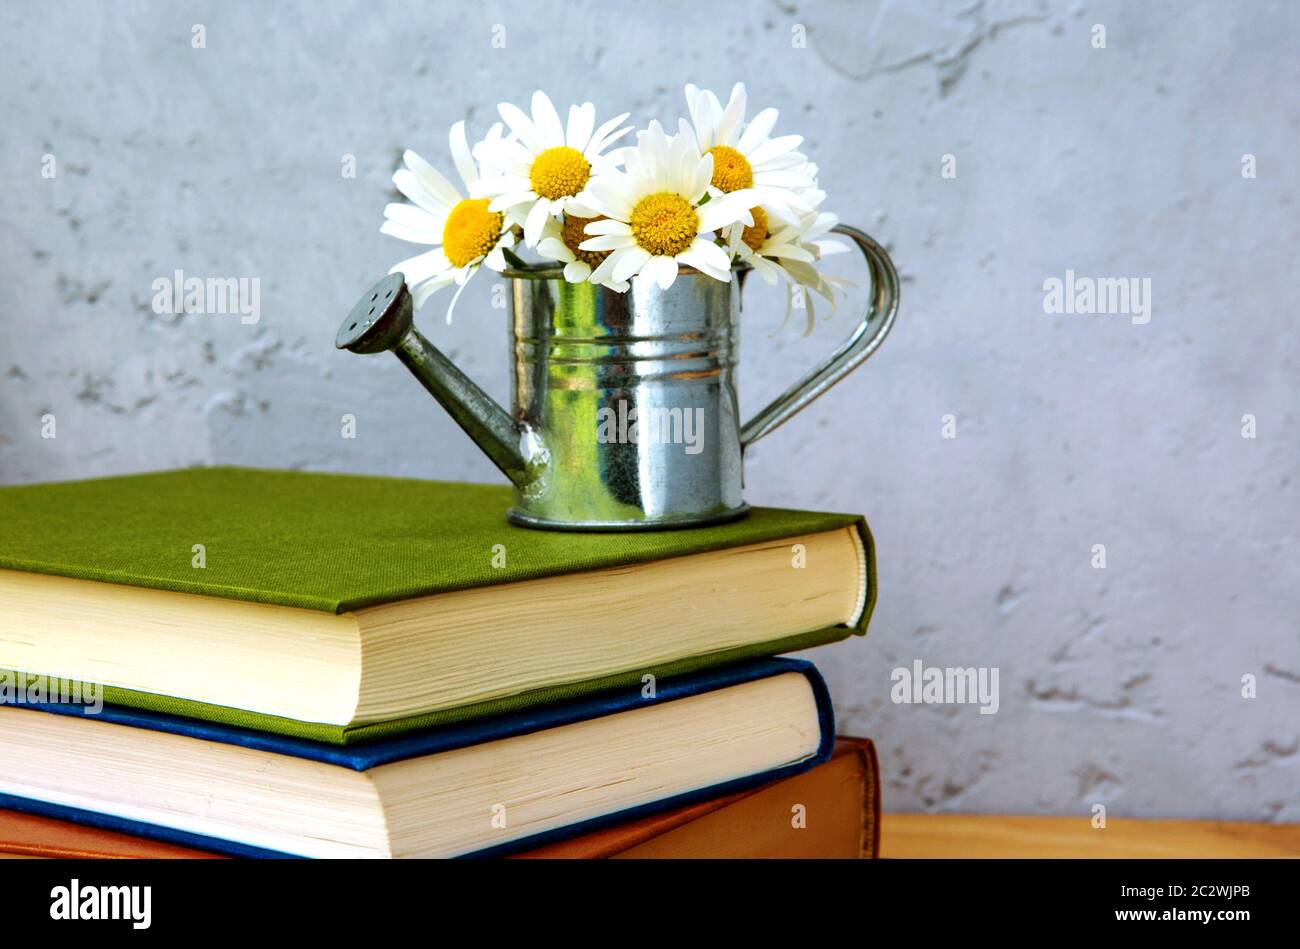 pile de livres et arrosoir miniature avec marguerites sur table en bois et fond gris Banque D'Images